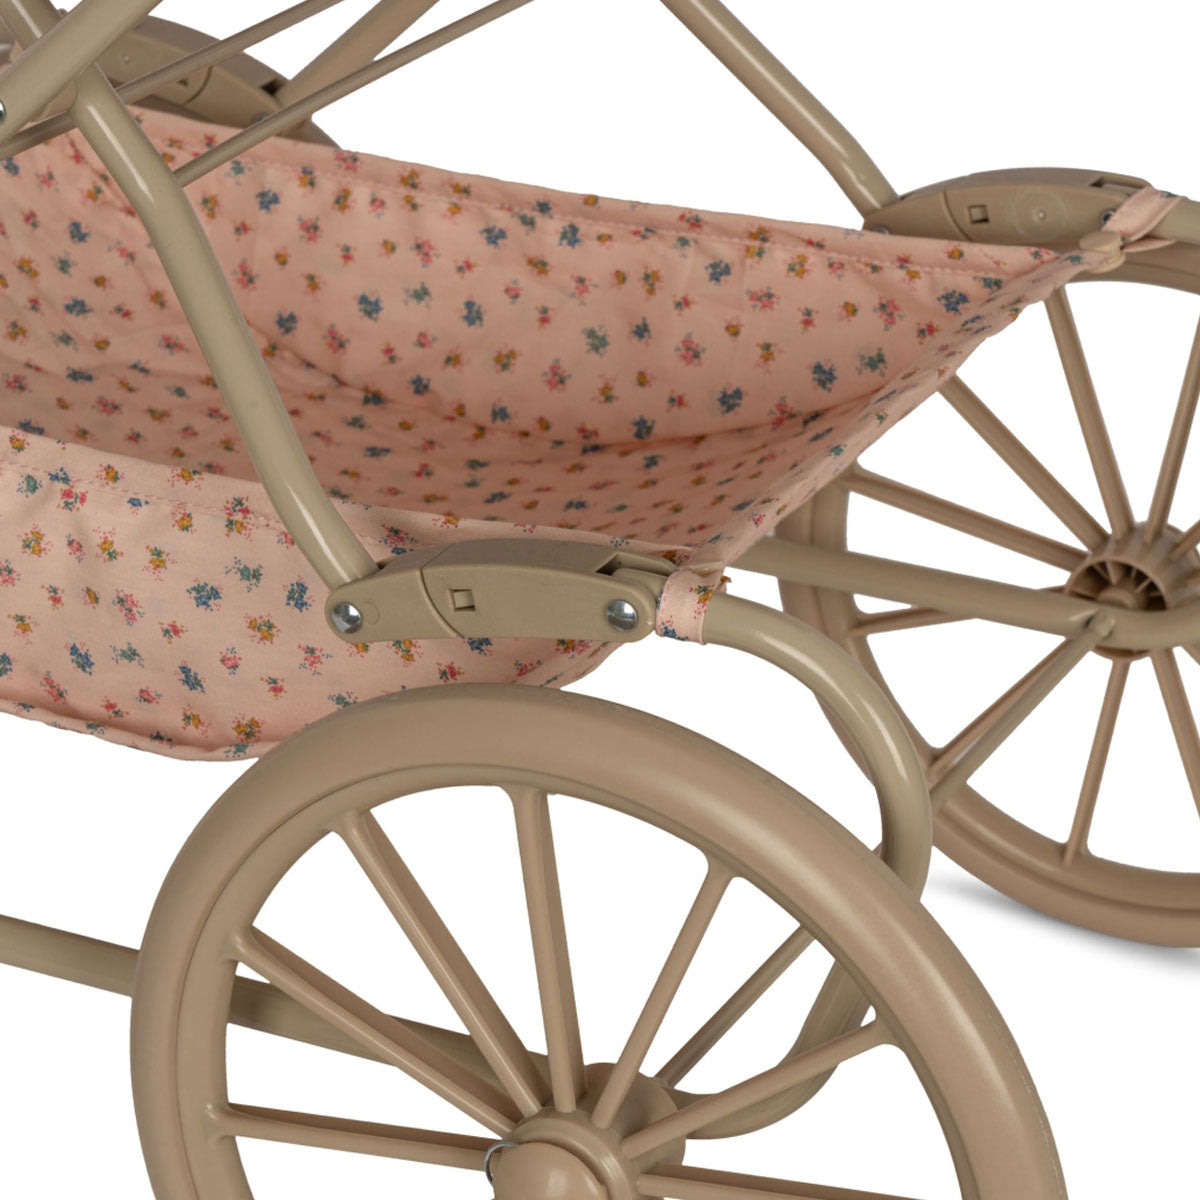 De Konges Slojd poppenwagen bloomie blush heeft een vintage look en is ontworpen met vier grote wielen gemaakt van EVA materiaal voor extra stabiliteit. De kinderwagen voor poppen heeft een schattige print met bloemetjes in verschillende kleuren. VanZus